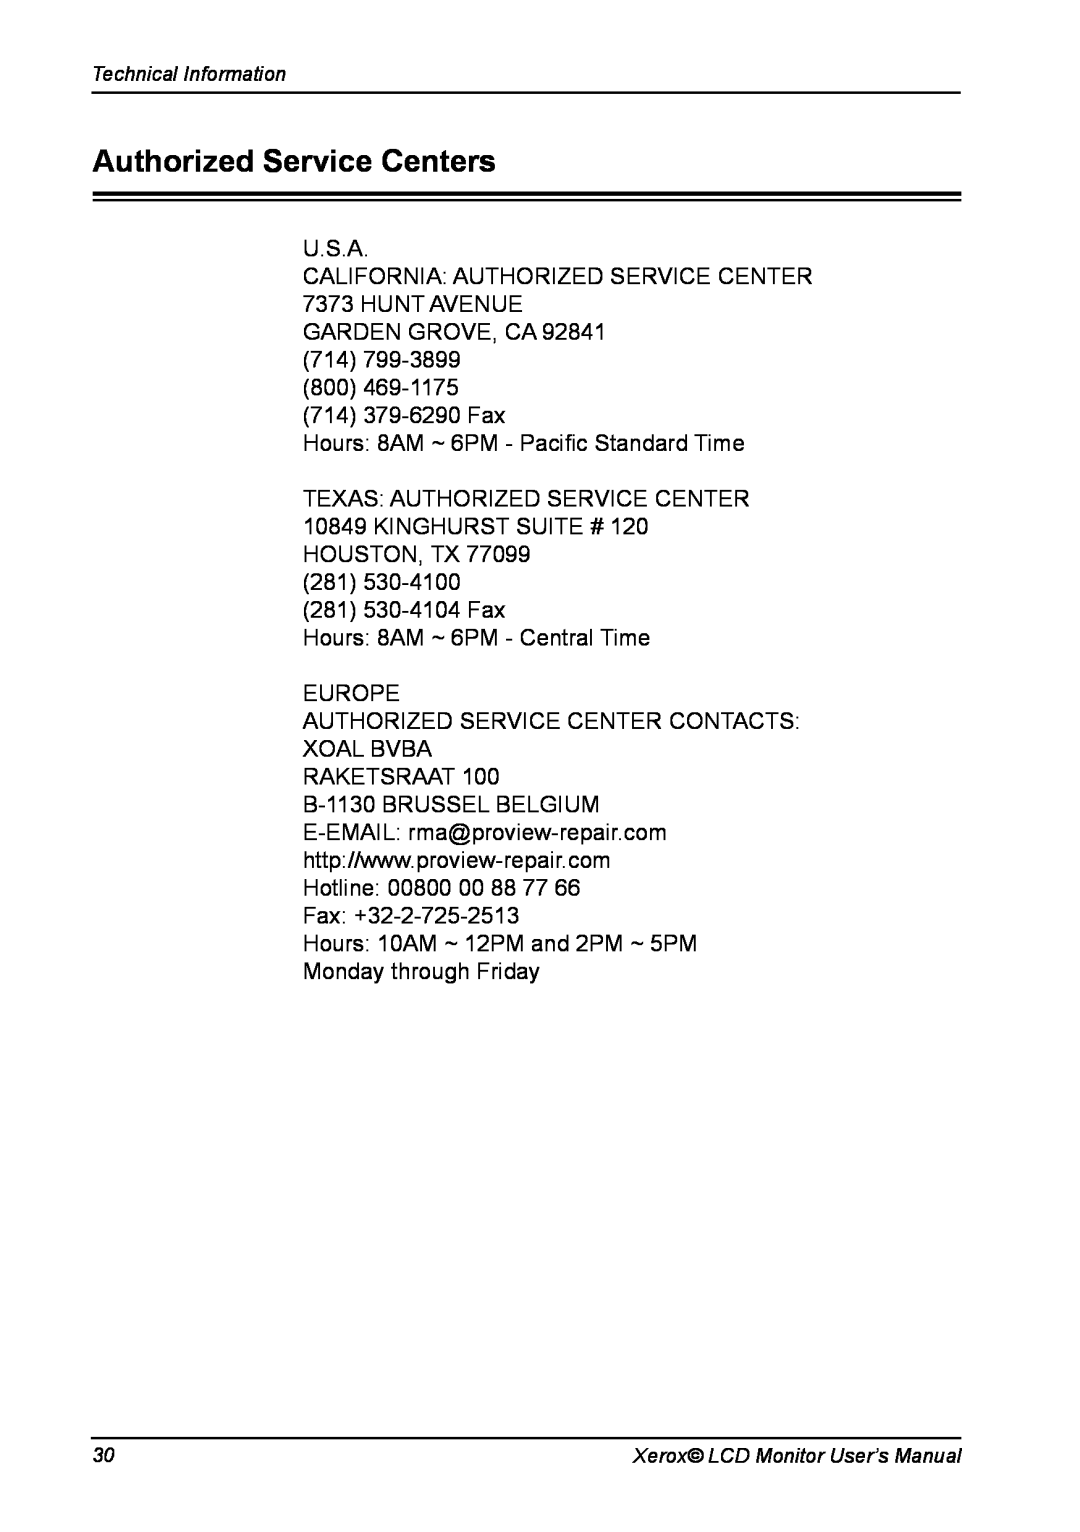 Xerox XM3-19w manual Authorized Service Centers 